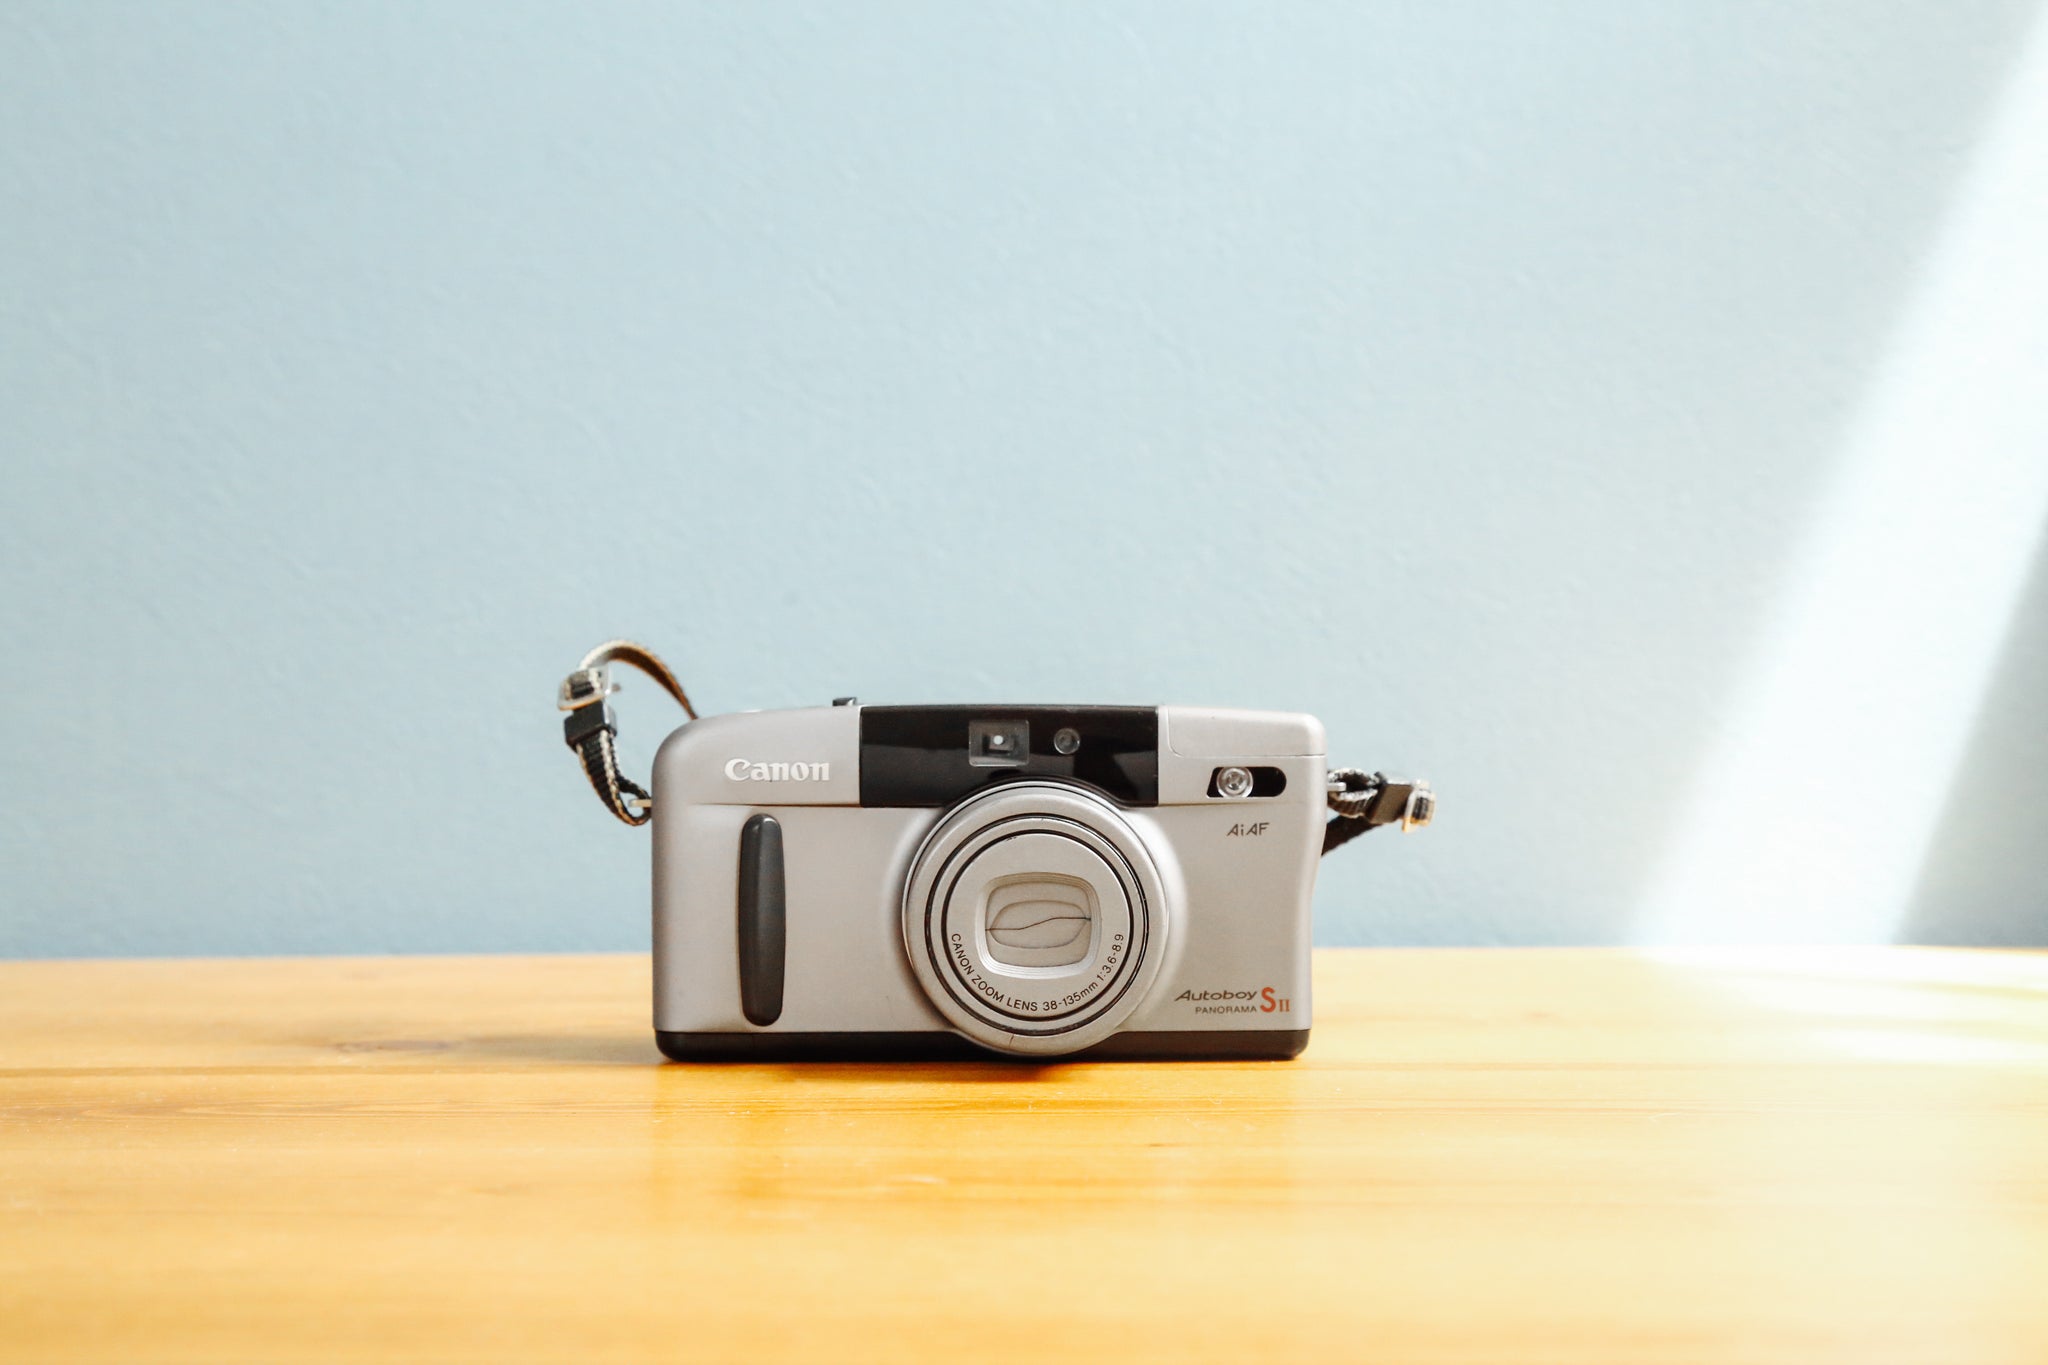 Canon Autoboy SII【完動品】 – Ein Camera